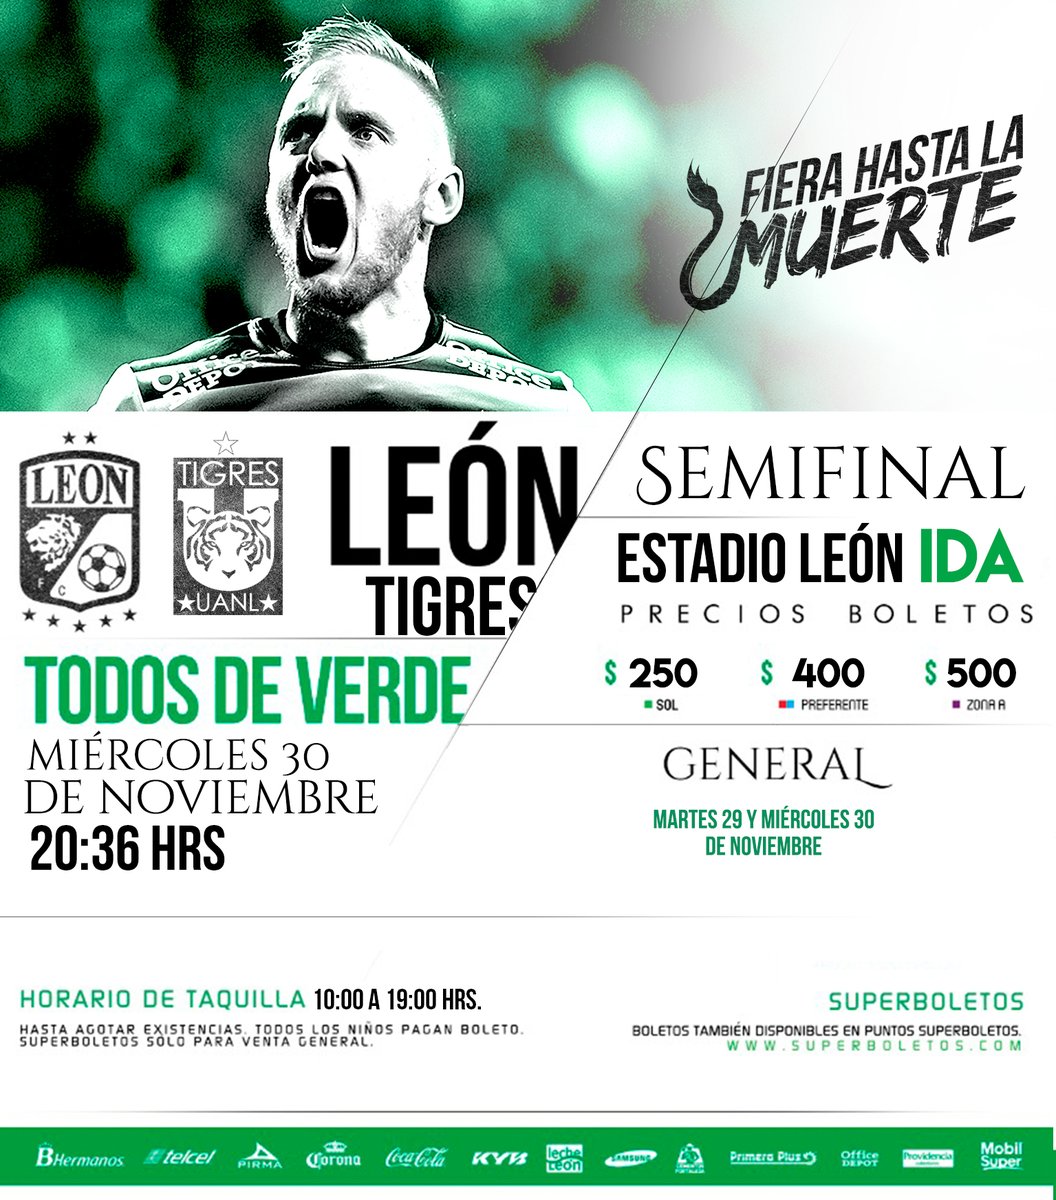 Precio de boletos Leon vs Tigres semifinal apertura 2016 - Apuntes de Futbol